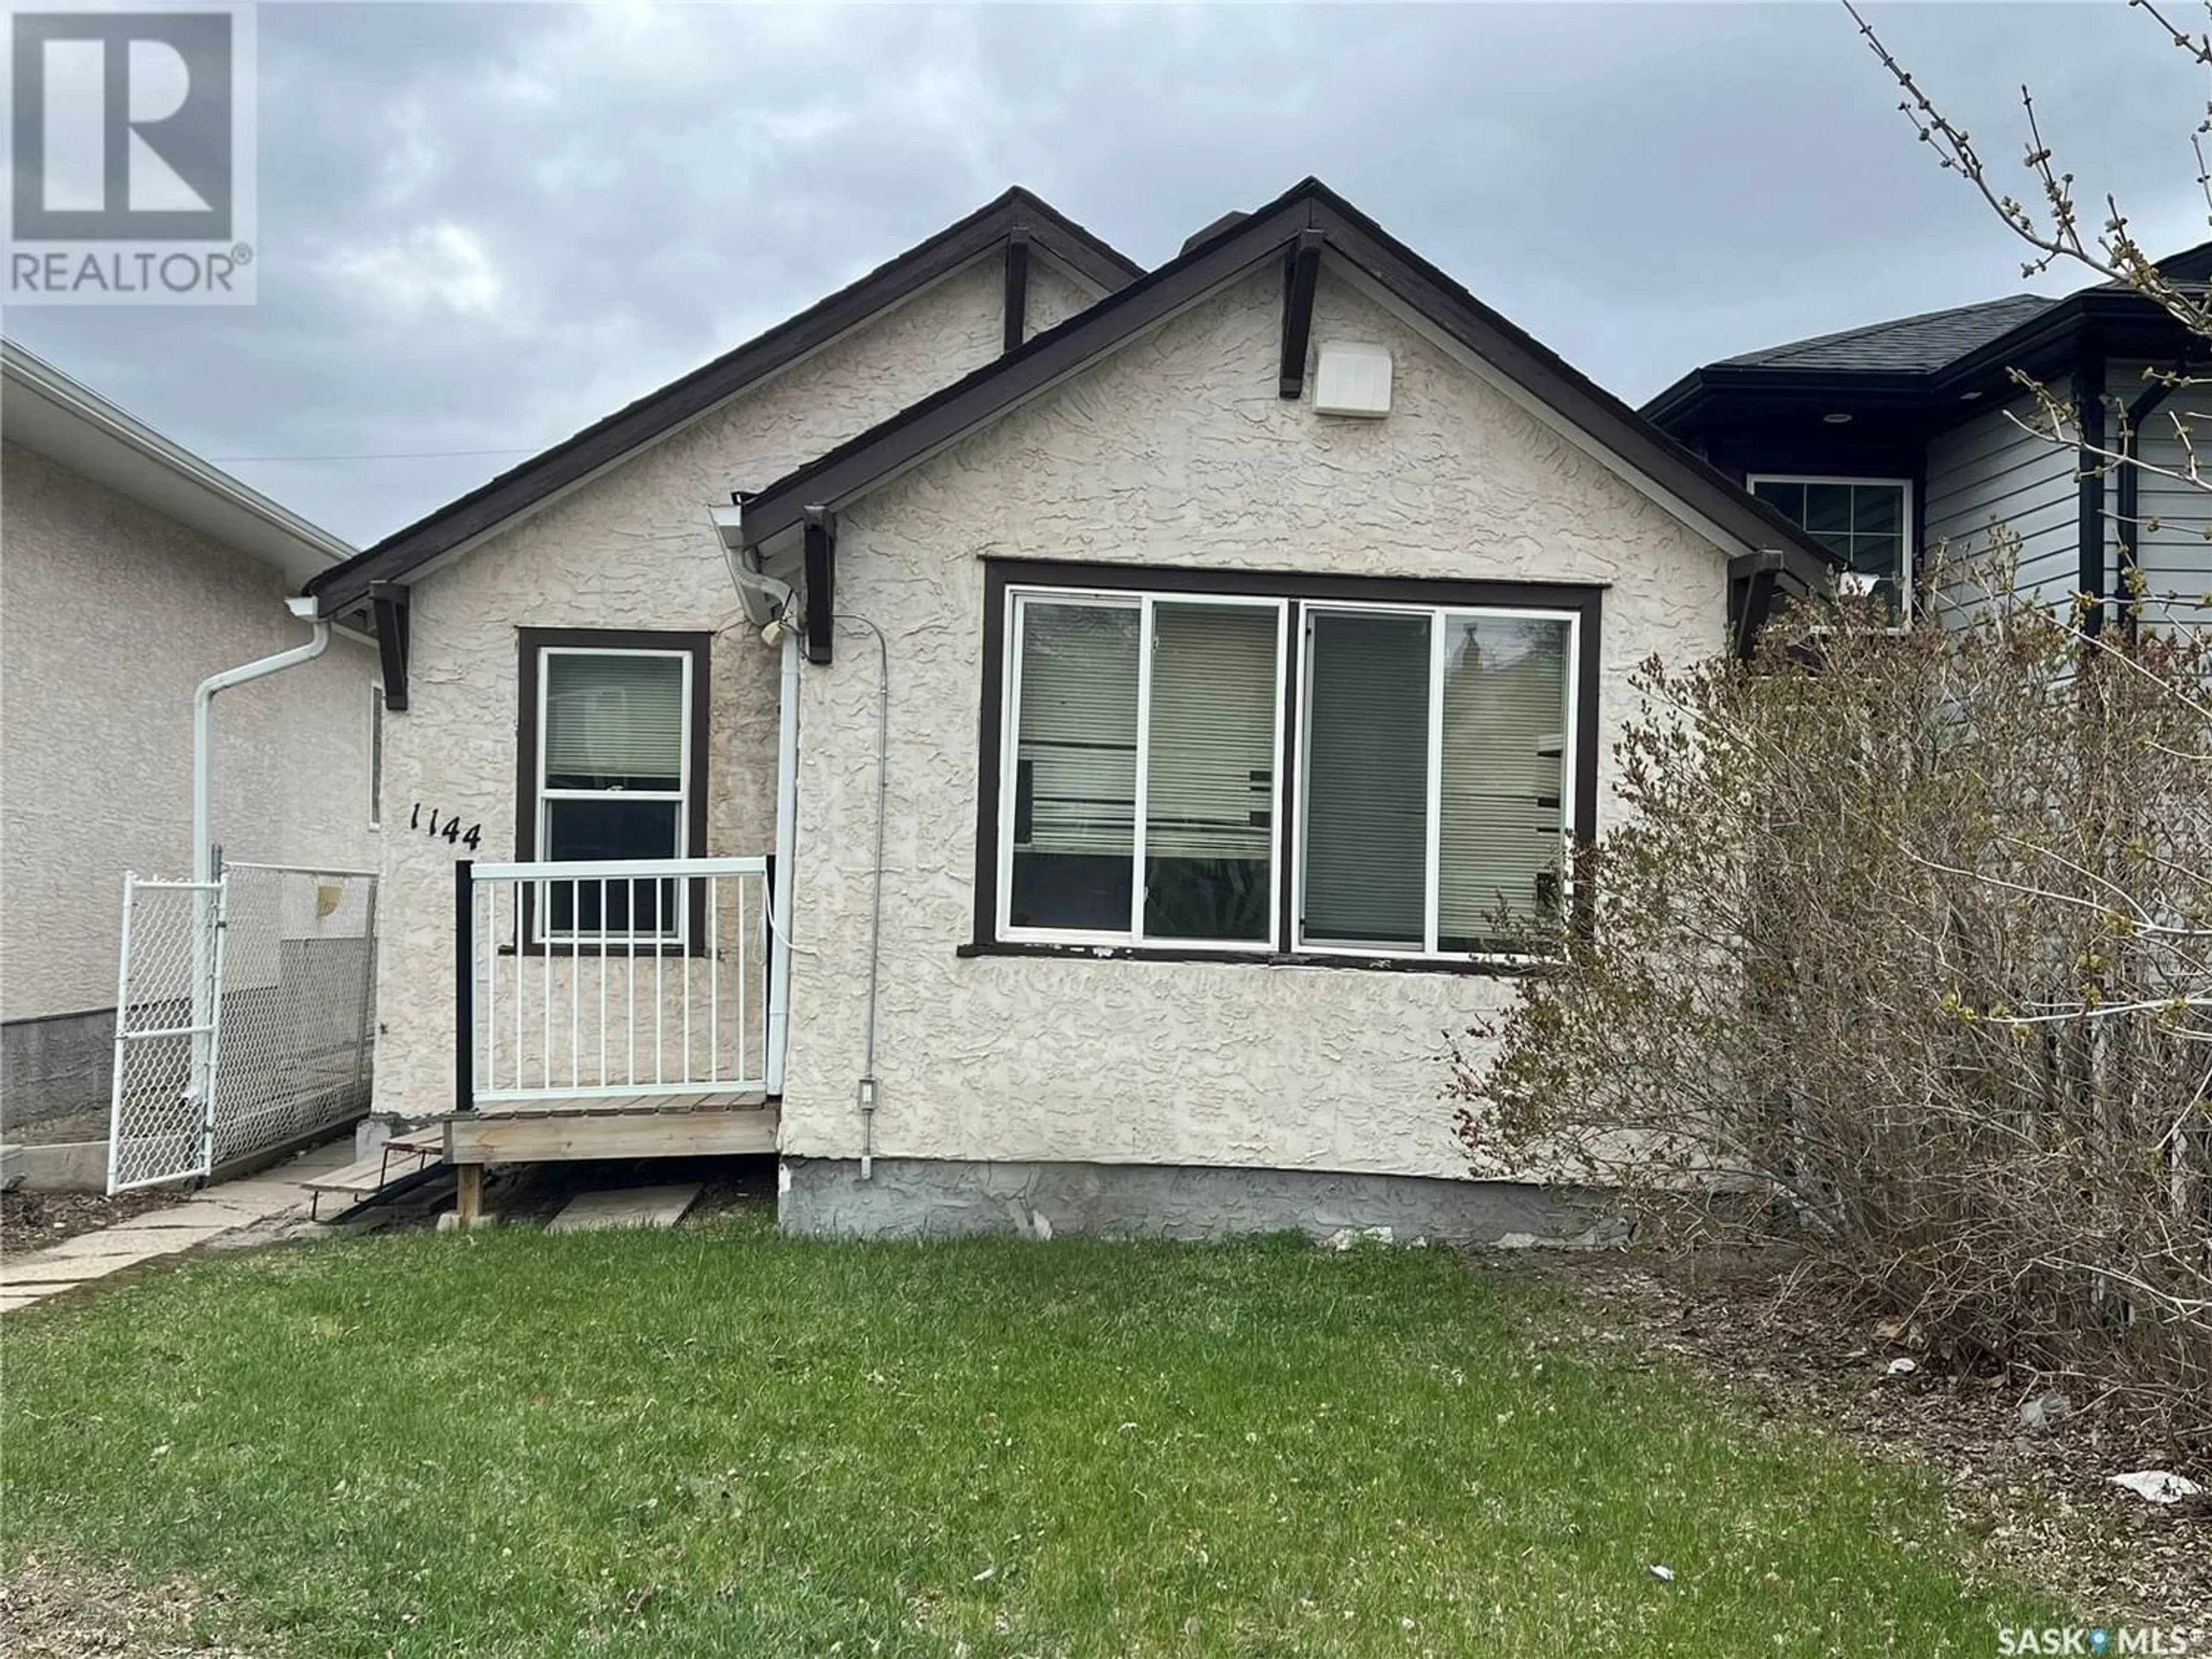 Frontside or backside of a home for 1144 Broder STREET, Regina Saskatchewan S4N3P9